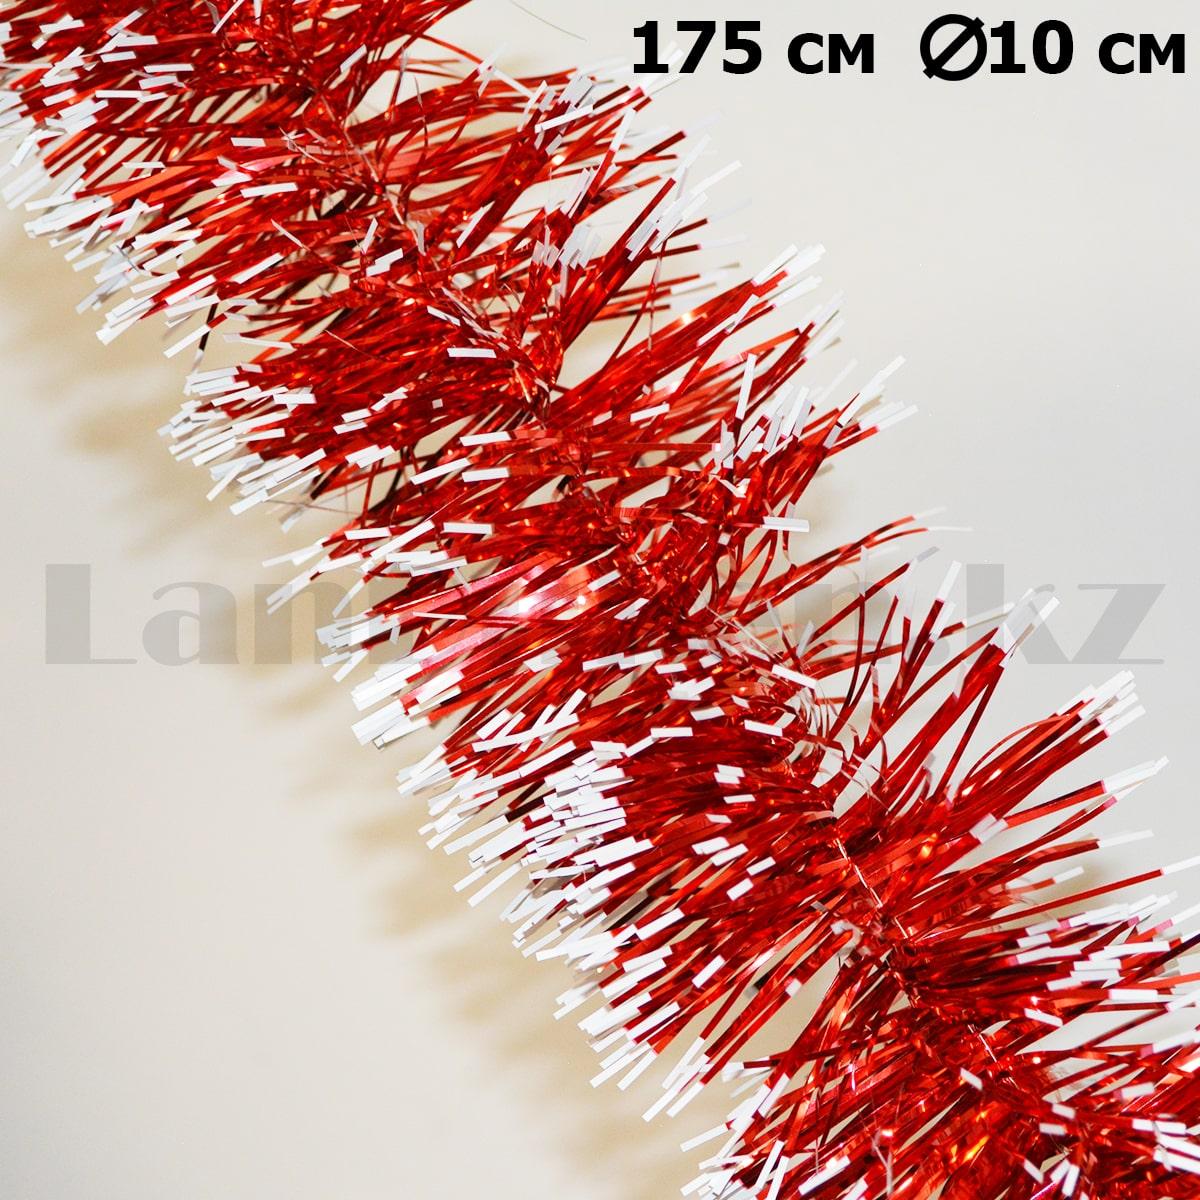 Мишура красная с белыми кончиками диаметр 10 см